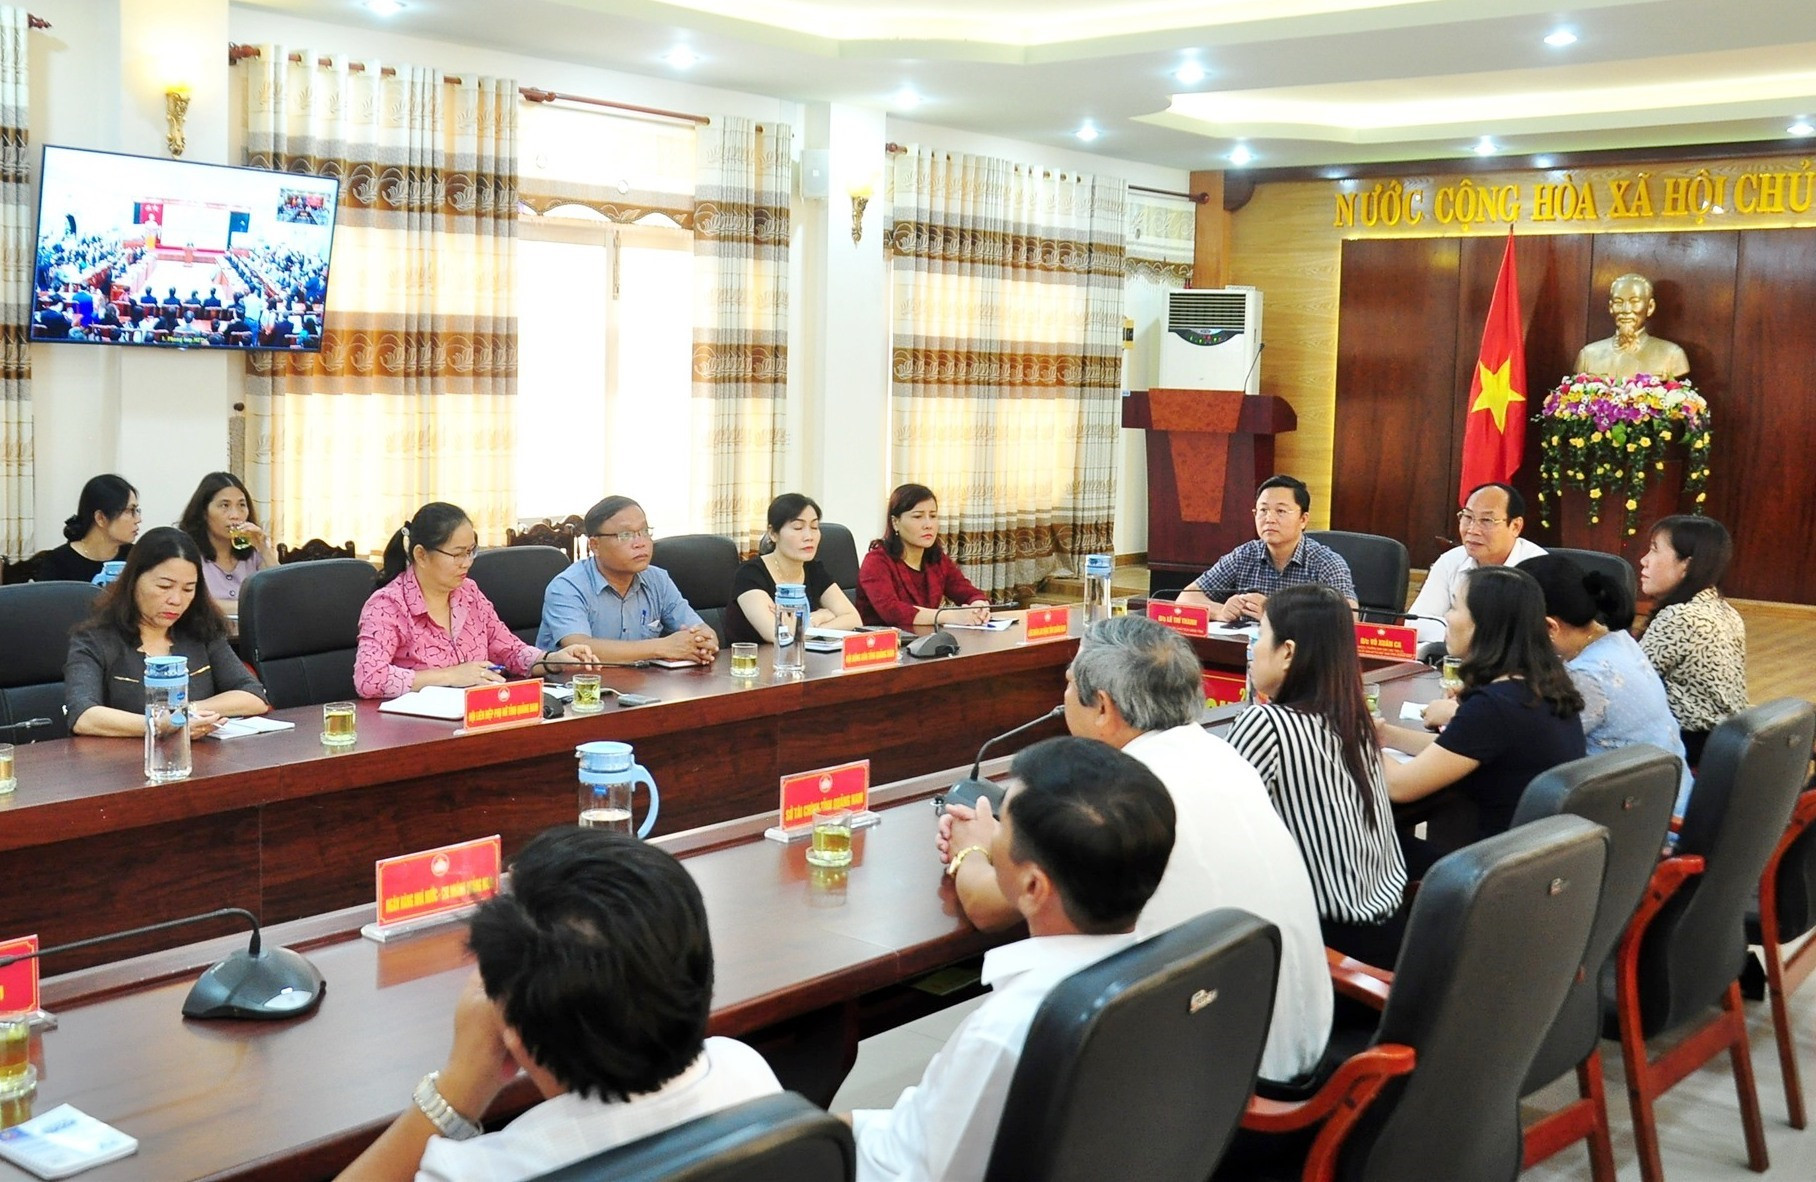 Các đại biểu theo dõi chương trình lễ phát động tại điểm cầu Ủy ban MTTQ Việt Nam tỉnh. Ảnh: VINH ANH